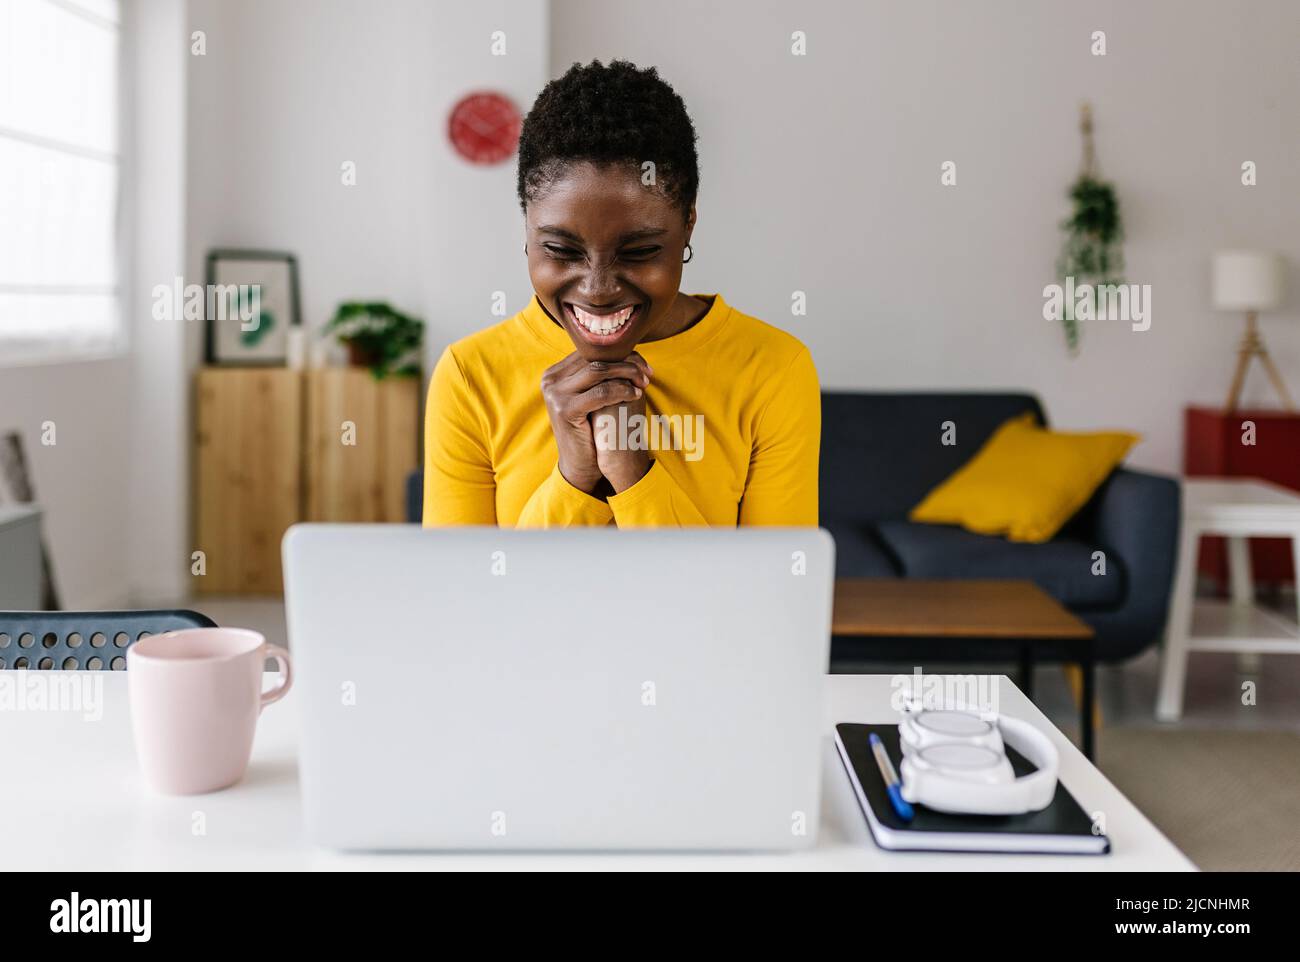 Une jeune femme africaine excitée qui célèbre son succès en regardant l'écran d'un ordinateur portable Banque D'Images